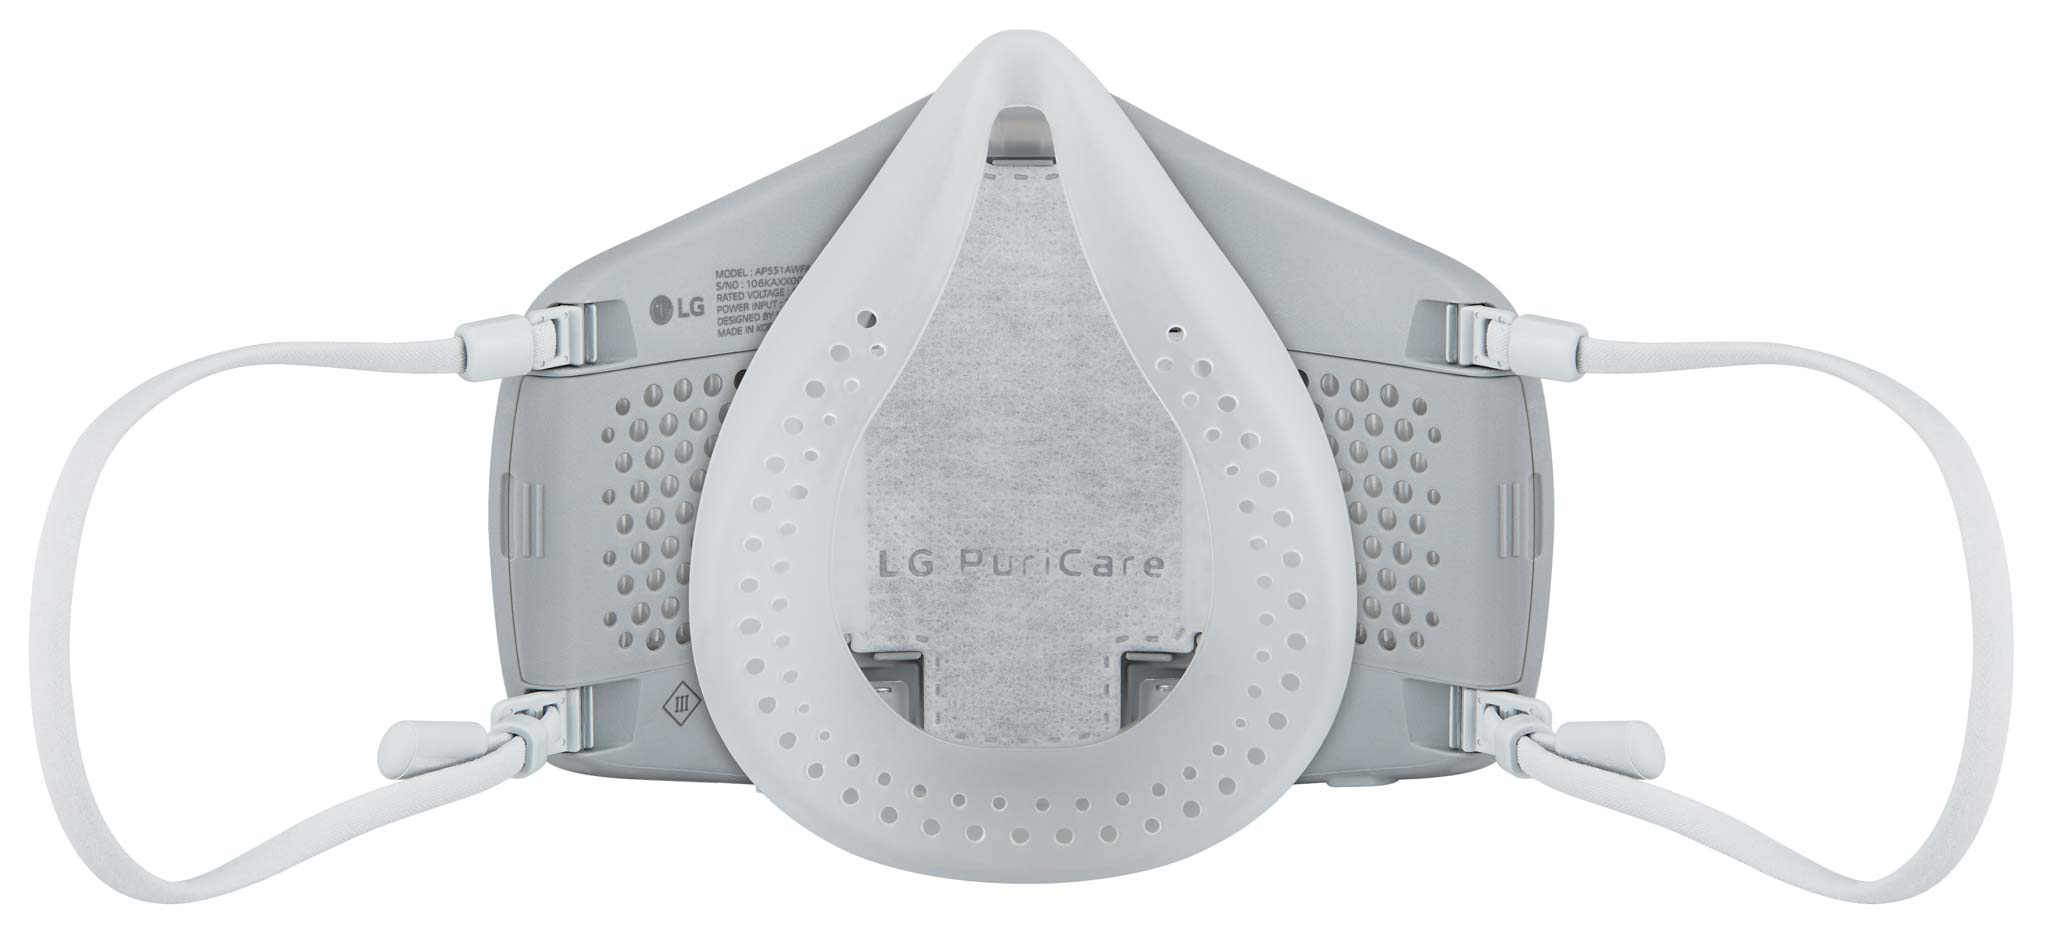 LG ra mắt khẩu trang lọc khí LG PuriCare thế hệ mới cải tiến ưu việt phù hợp cho mục đích sử dụng hàng ngày